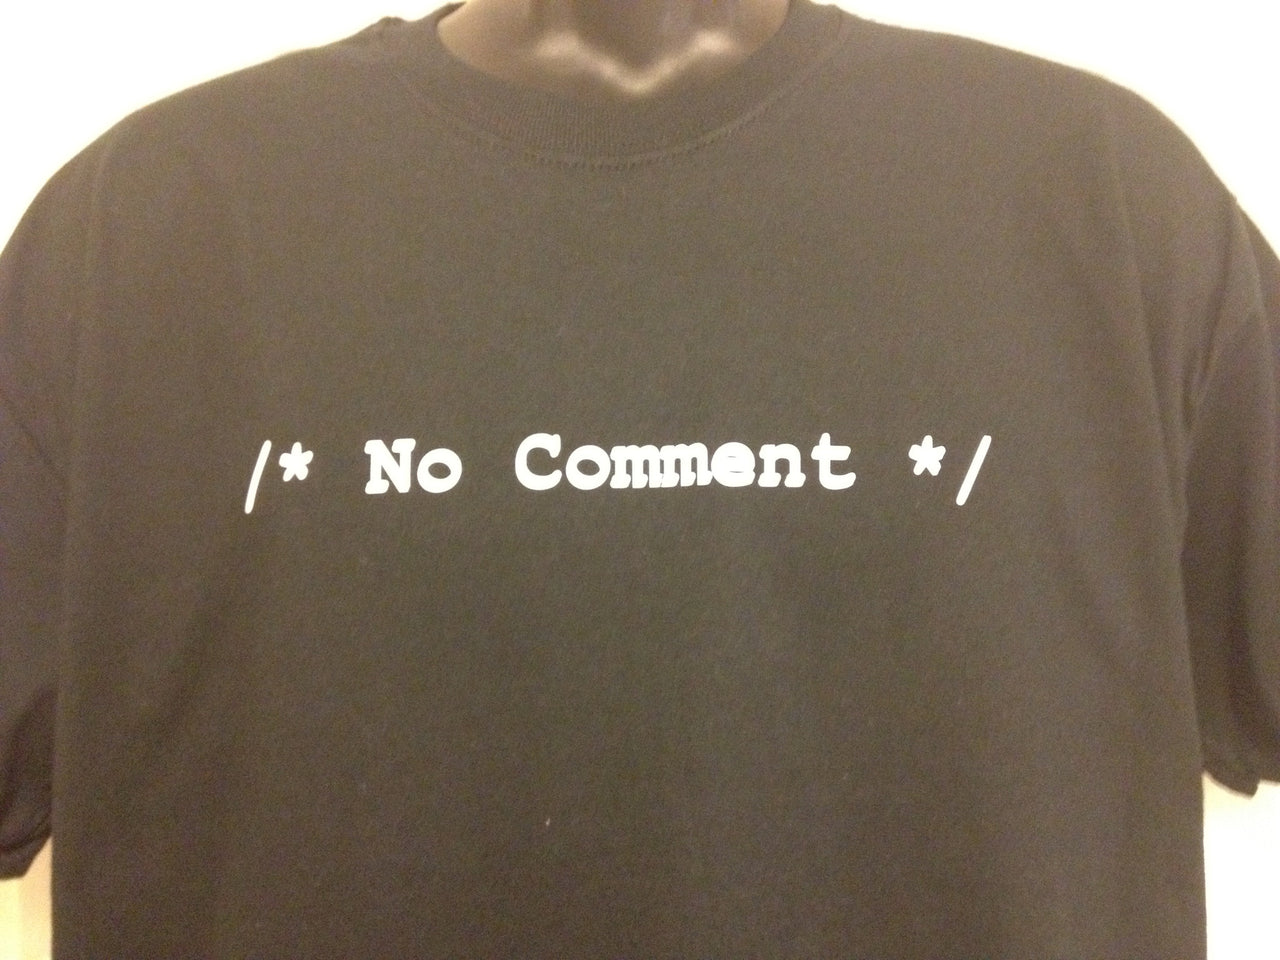 /* No Comment */ Tshirt: Black With White Print - TshirtNow.net - 5